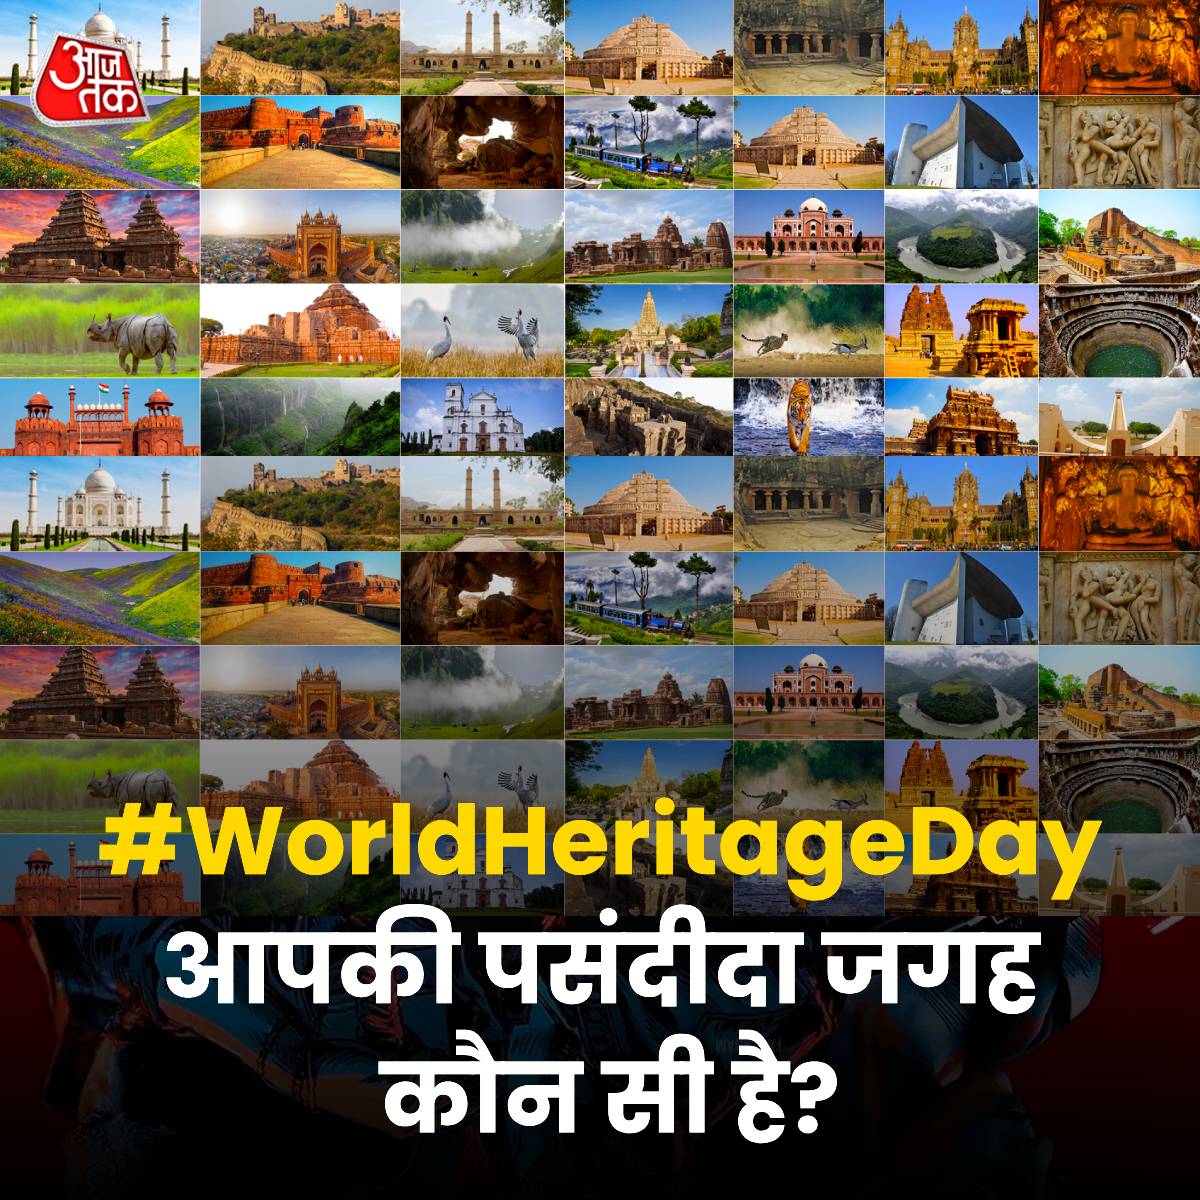 #WorldHeritageDay2024 : आपकी पसंदीदा जगह कौन सी है? 

#ATYourSpace #YourSpace #unescoworldheritage #WorldHeritageDay